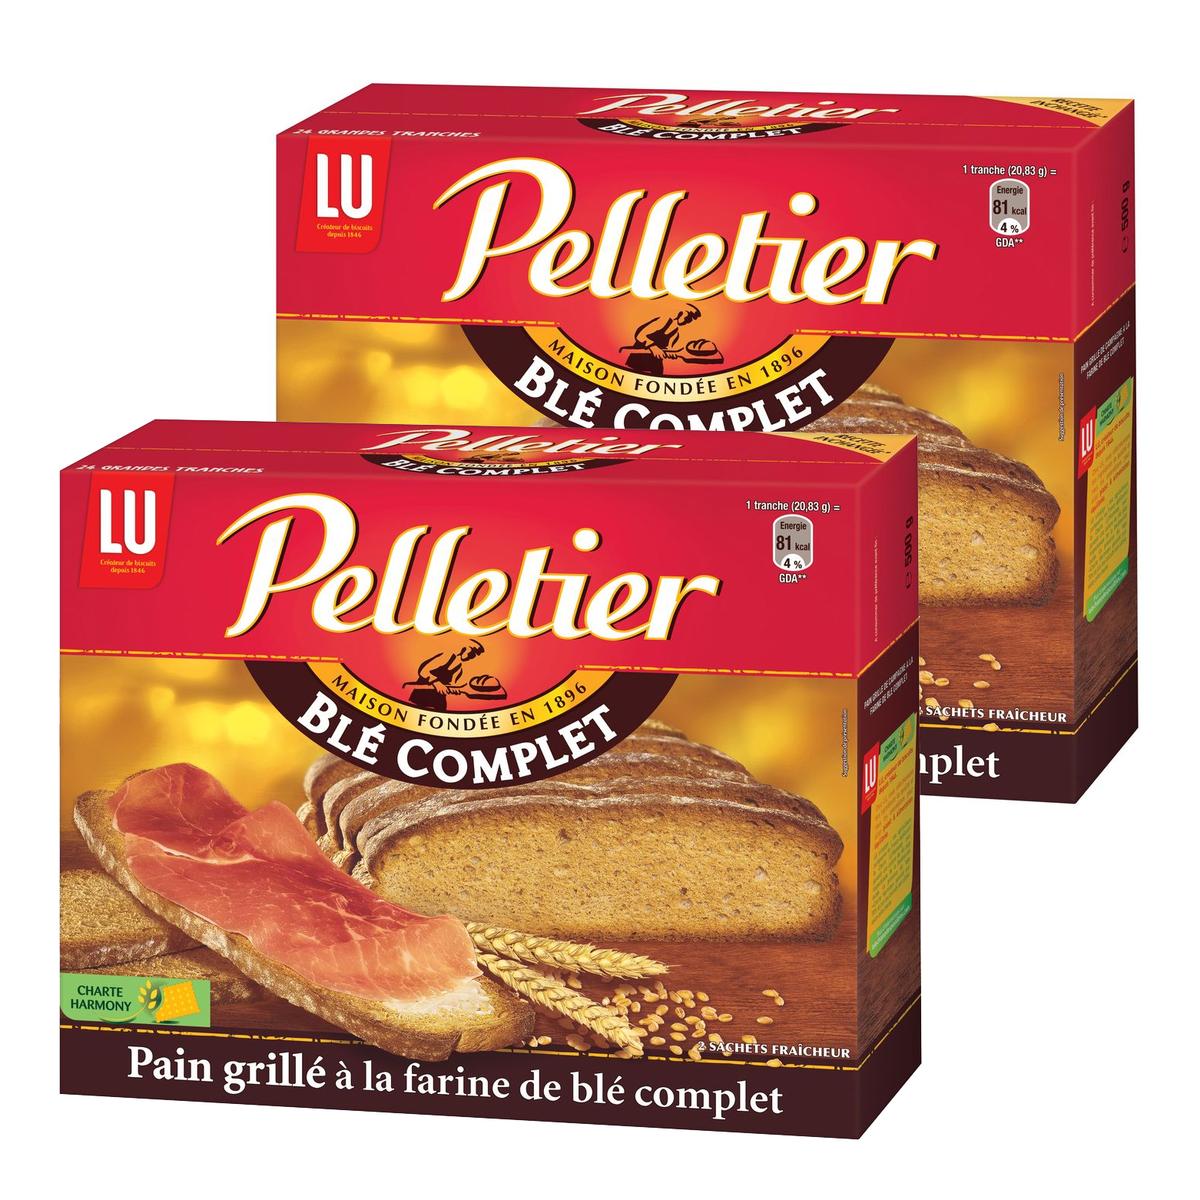 Acheter Promotion Pelletier Pain grillé au blé complet, Lot de 2x500g